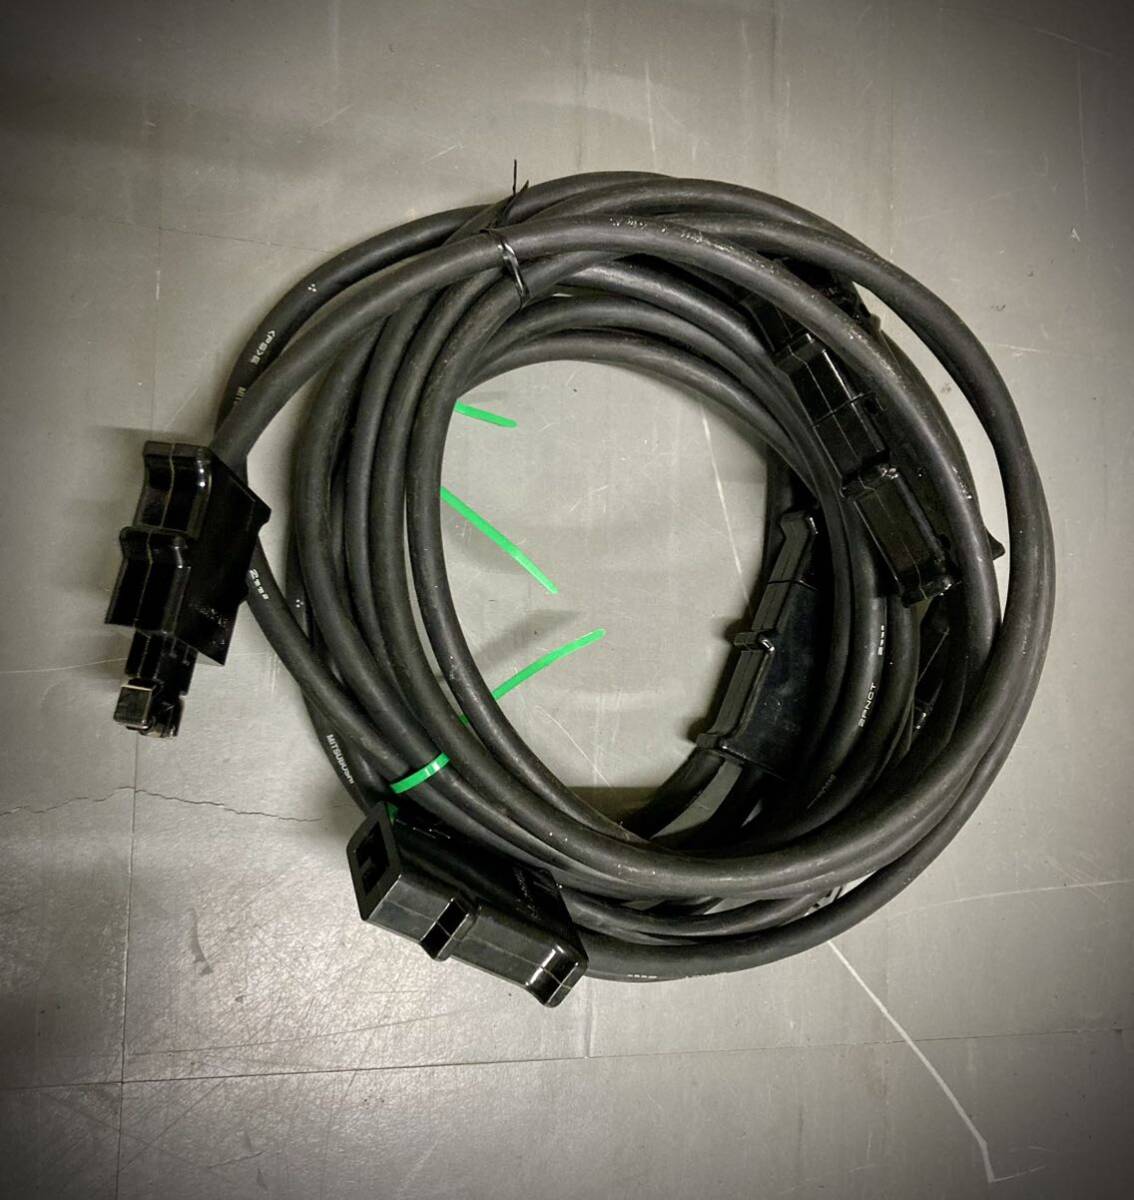  Mai шт. освещение удлинение кабель 4 шт. комплект AL-EXC-202